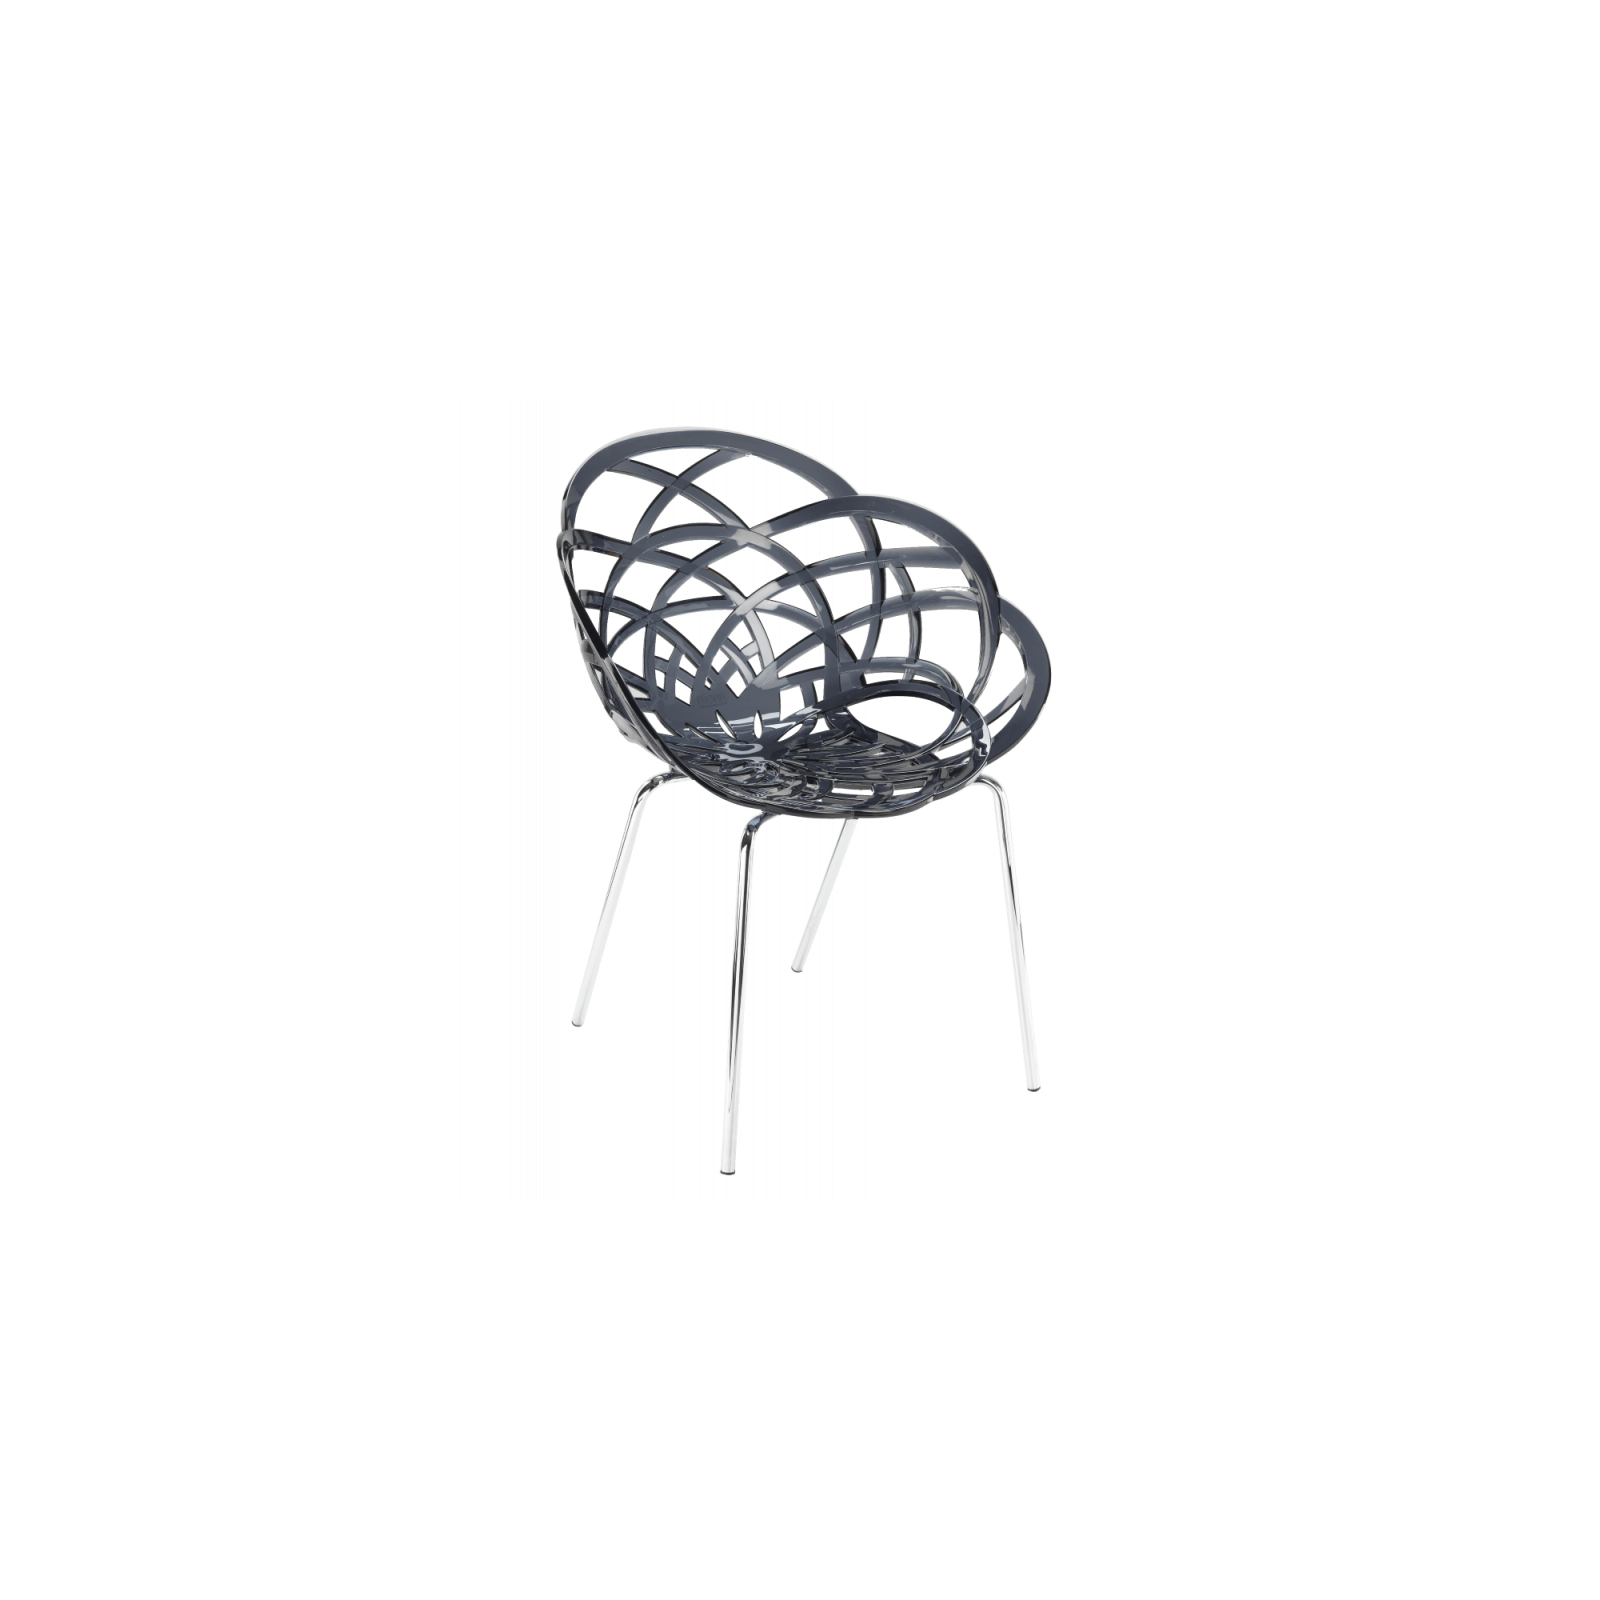 Кухонный стул PAPATYA FLORA-ML, сидение матовый красный кирпич, цвет 51c, ножки хр (2954)